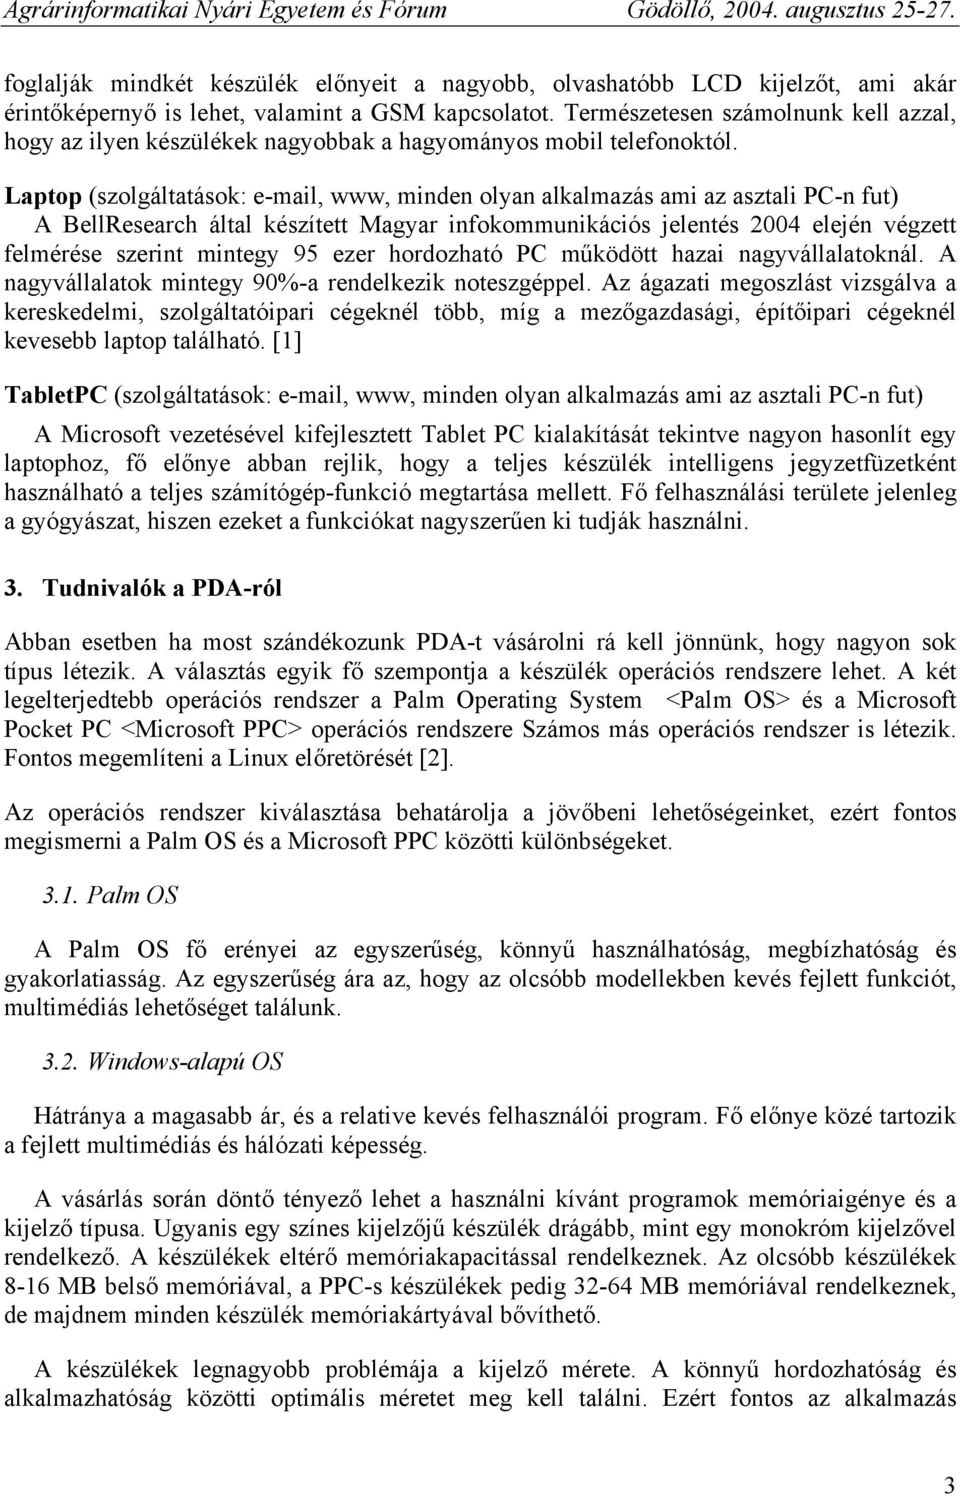 Laptop (szolgáltatások: e-mail, www, minden olyan alkalmazás ami az asztali PC-n fut) A BellResearch által készített Magyar infokommunikációs jelentés 2004 elején végzett felmérése szerint mintegy 95